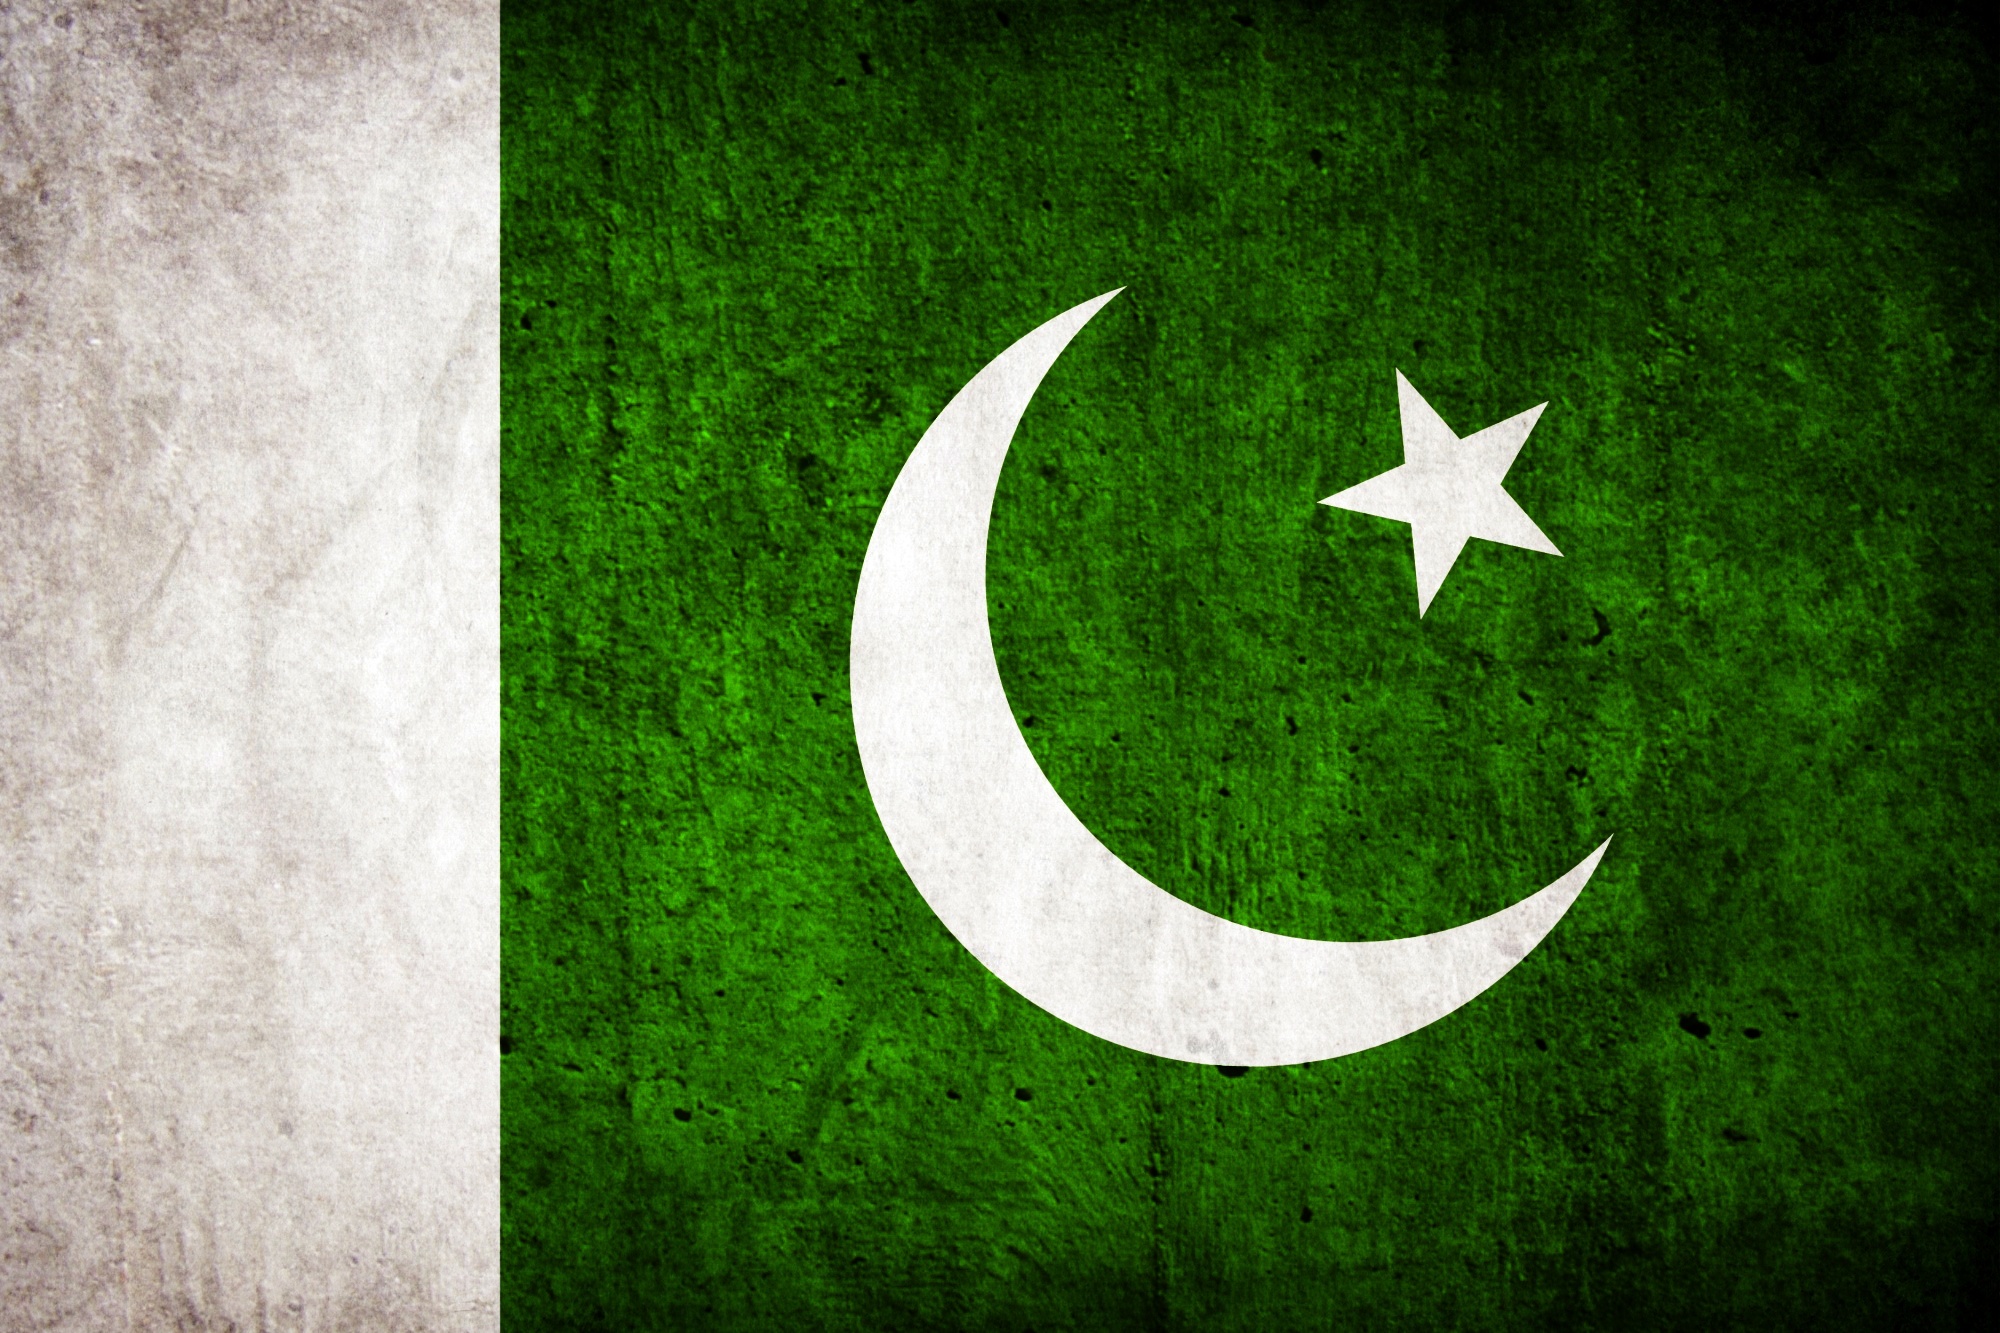 fond d'écran du drapeau du pakistan,vert,croissant,police de caractère,drapeau,herbe